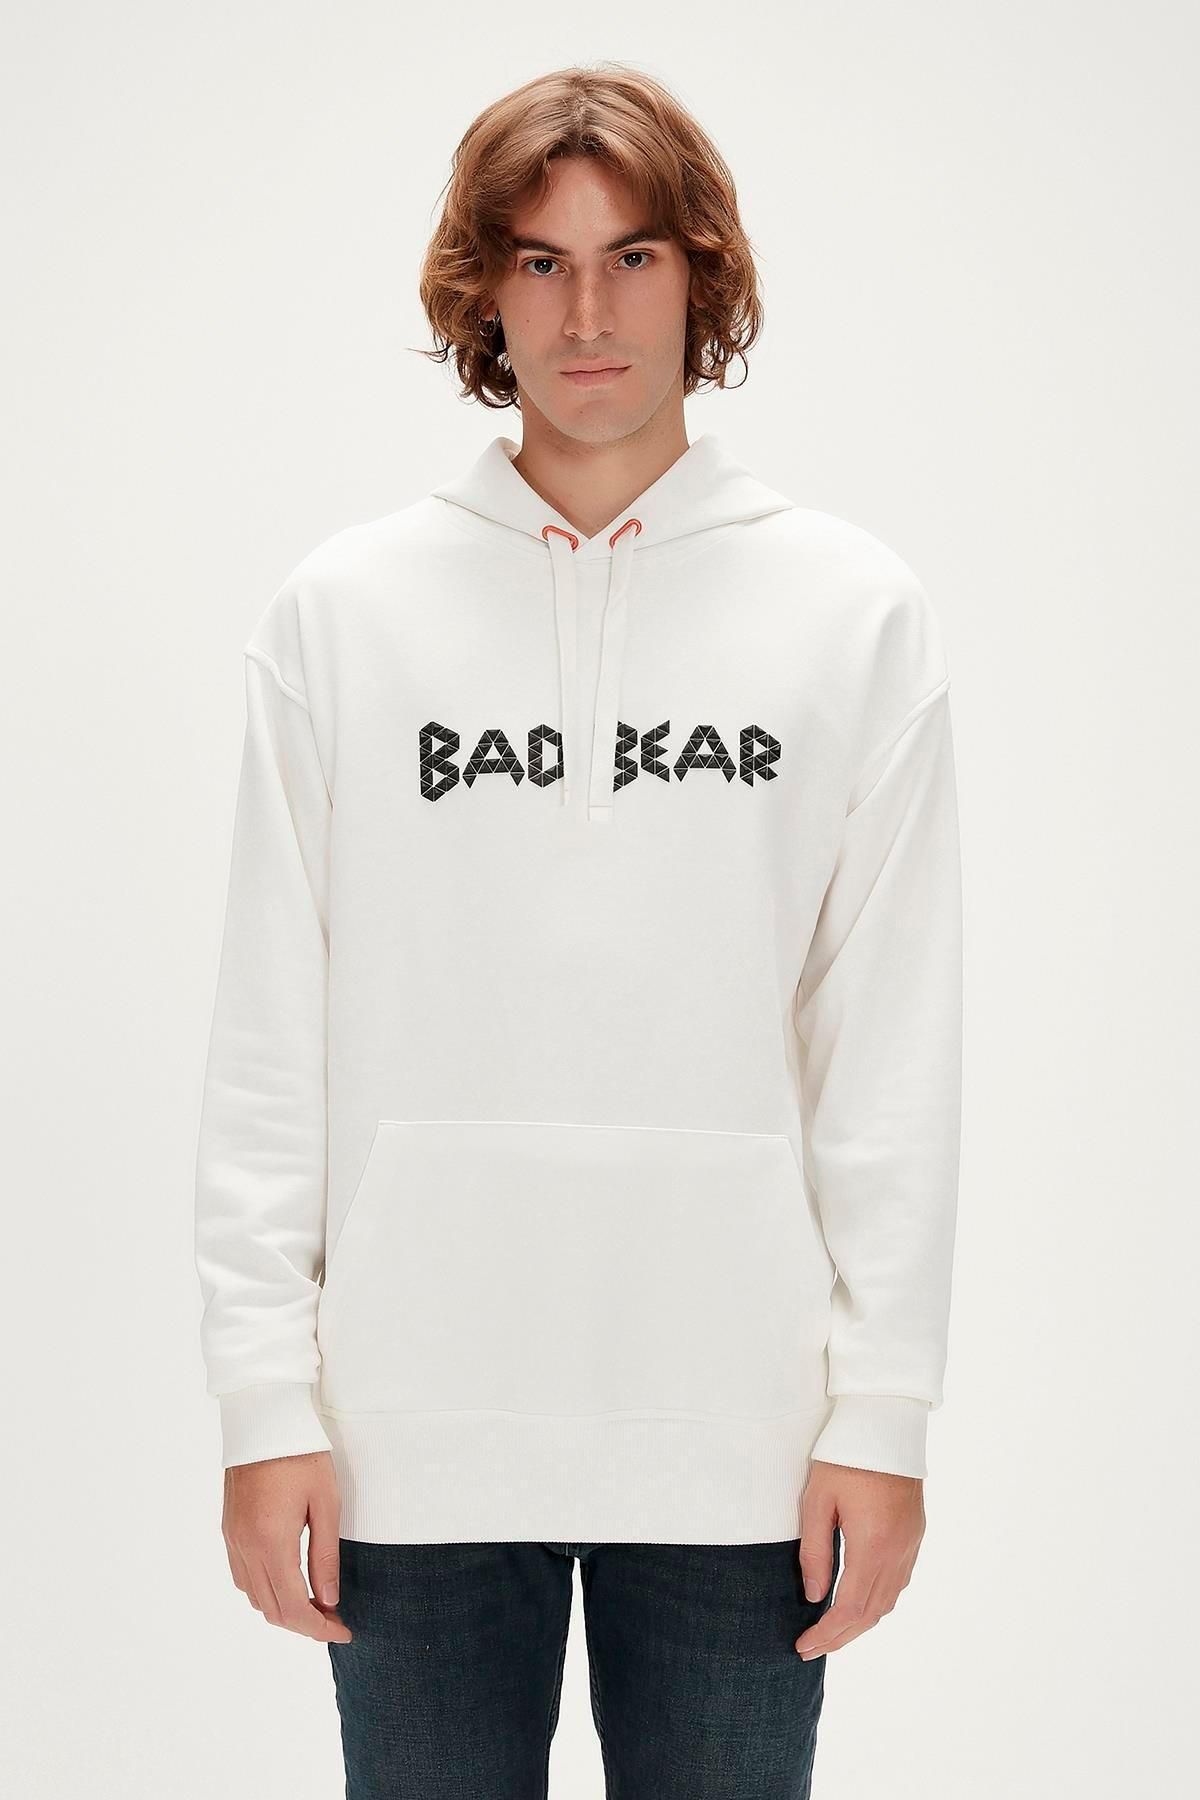 Bad Bear 23.02.12.001-c04 3d Bad Erkek Sweatshirt